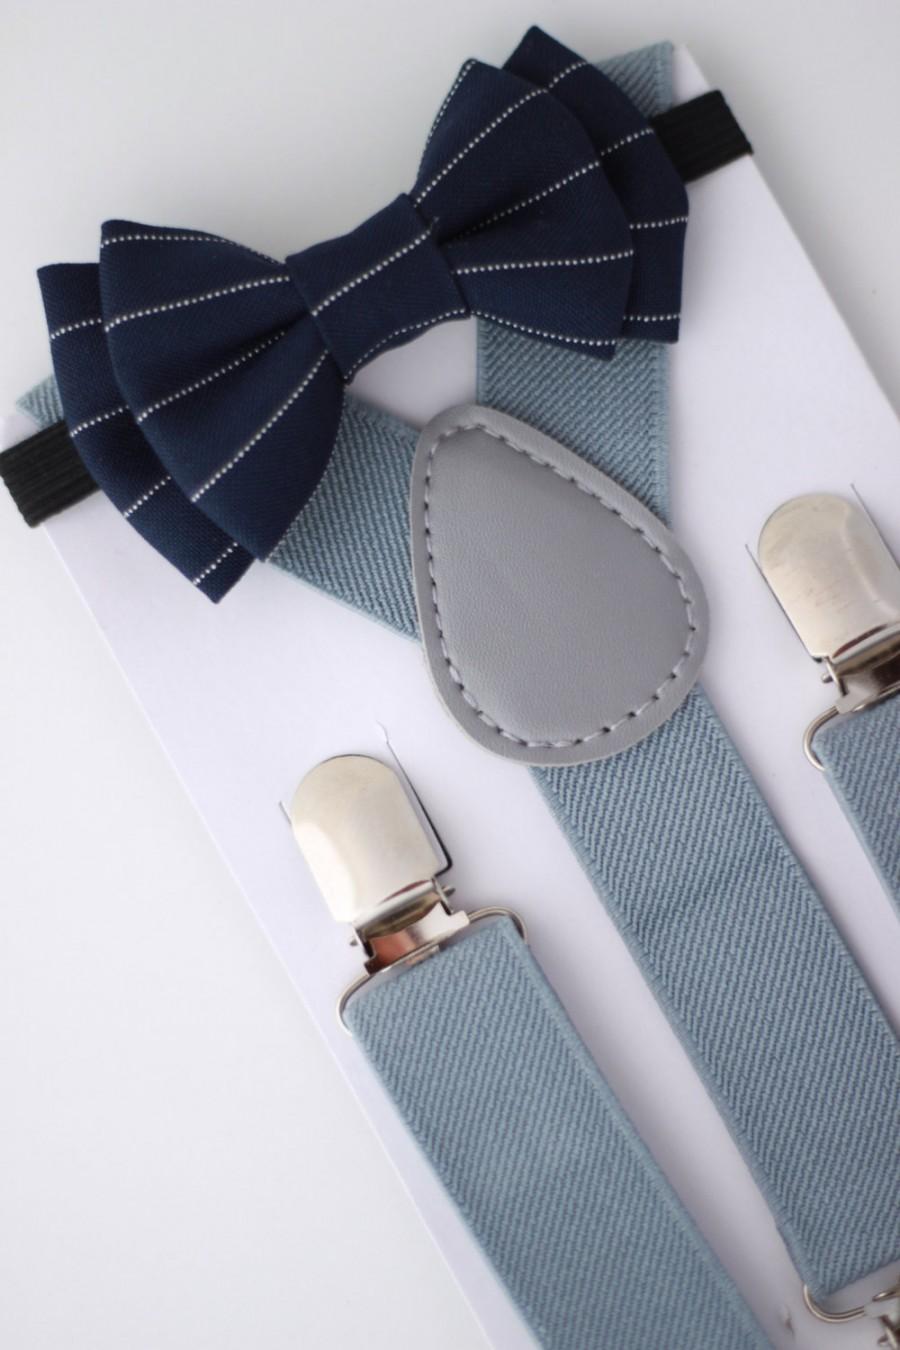 Hochzeit - SUSPENDER & BOWTIE SET.  Newborn - Adult sizes. Light grey Suspenders. Navy blue pinstripe bow tie.